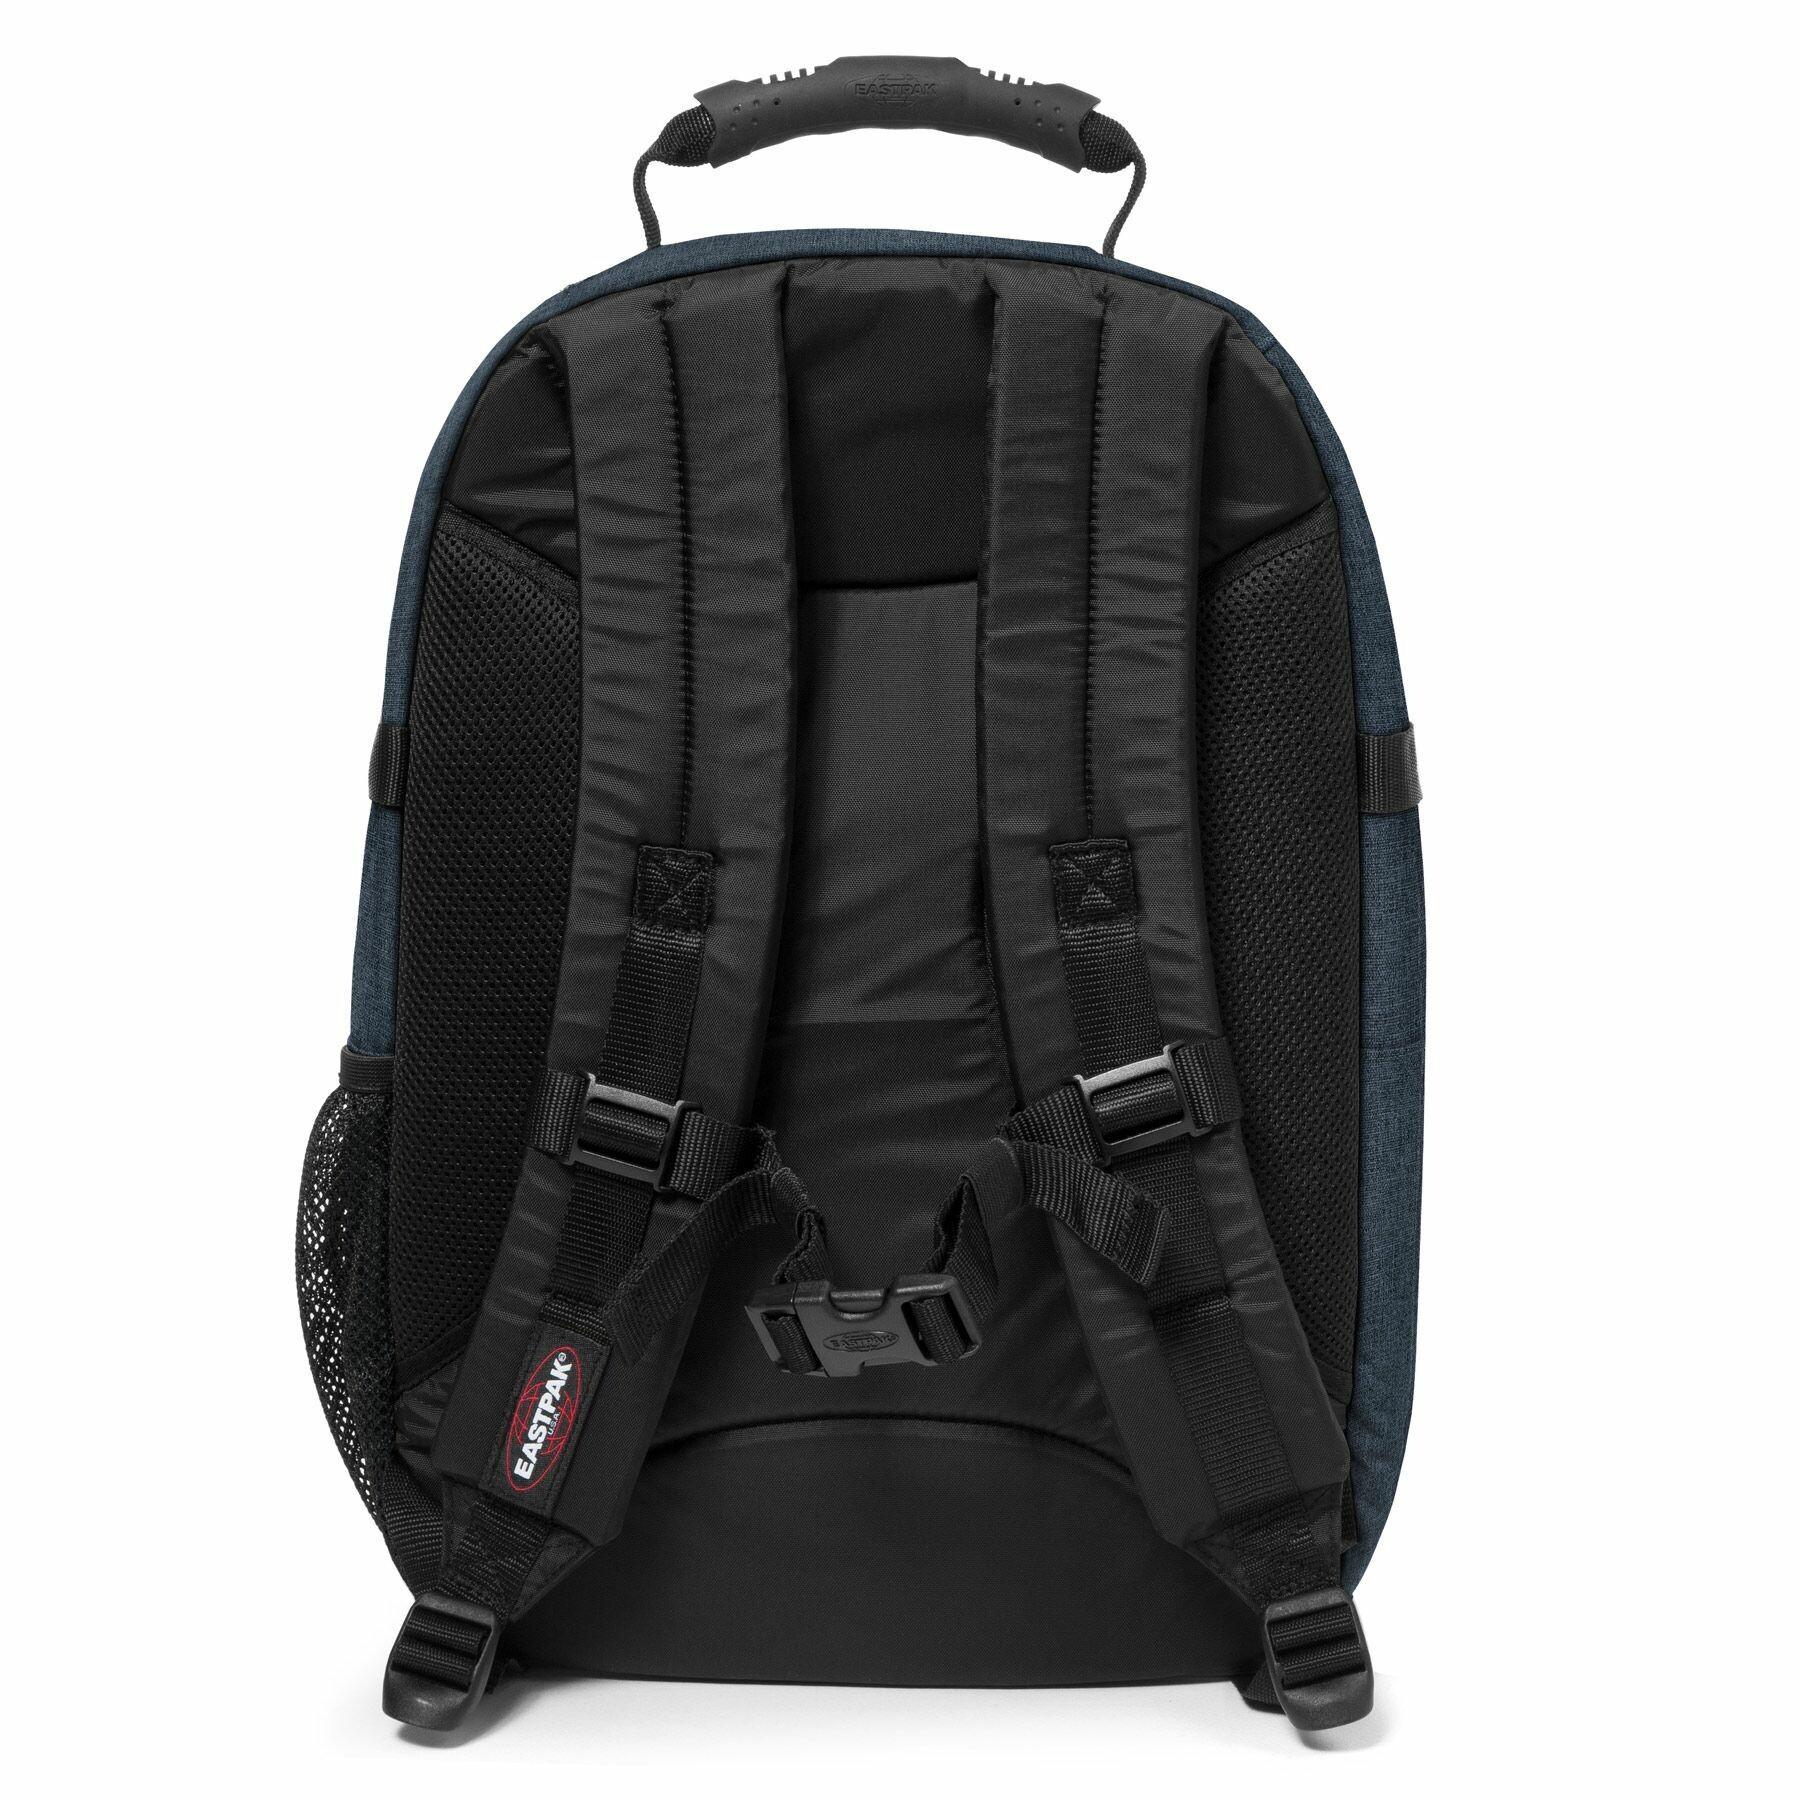 kromme maïs Waterig Backpack Eastpak Tutor - Backpacks - Bags - Equipment